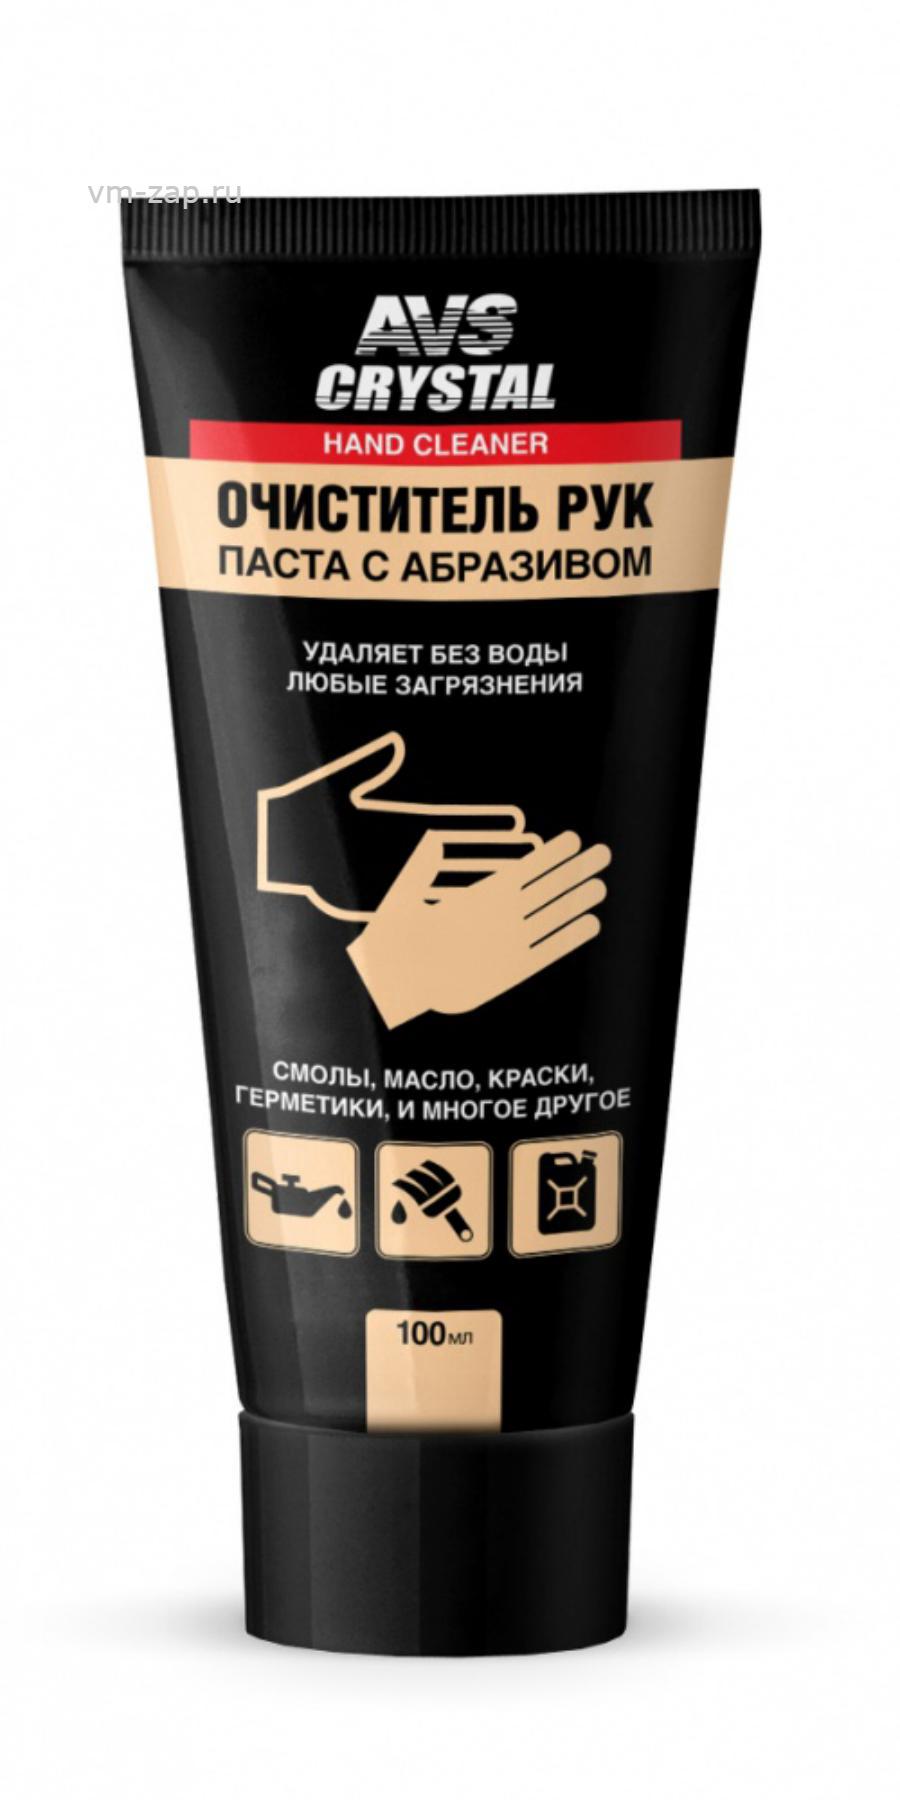 Крем для очистки. Очиститель рук (туба) 115 г AVS AVK-041. Очиститель рук (туба)100 мл AVS AVK-041. Очиститель рук туба 100мл. Паста для очистки рук с абразивом.